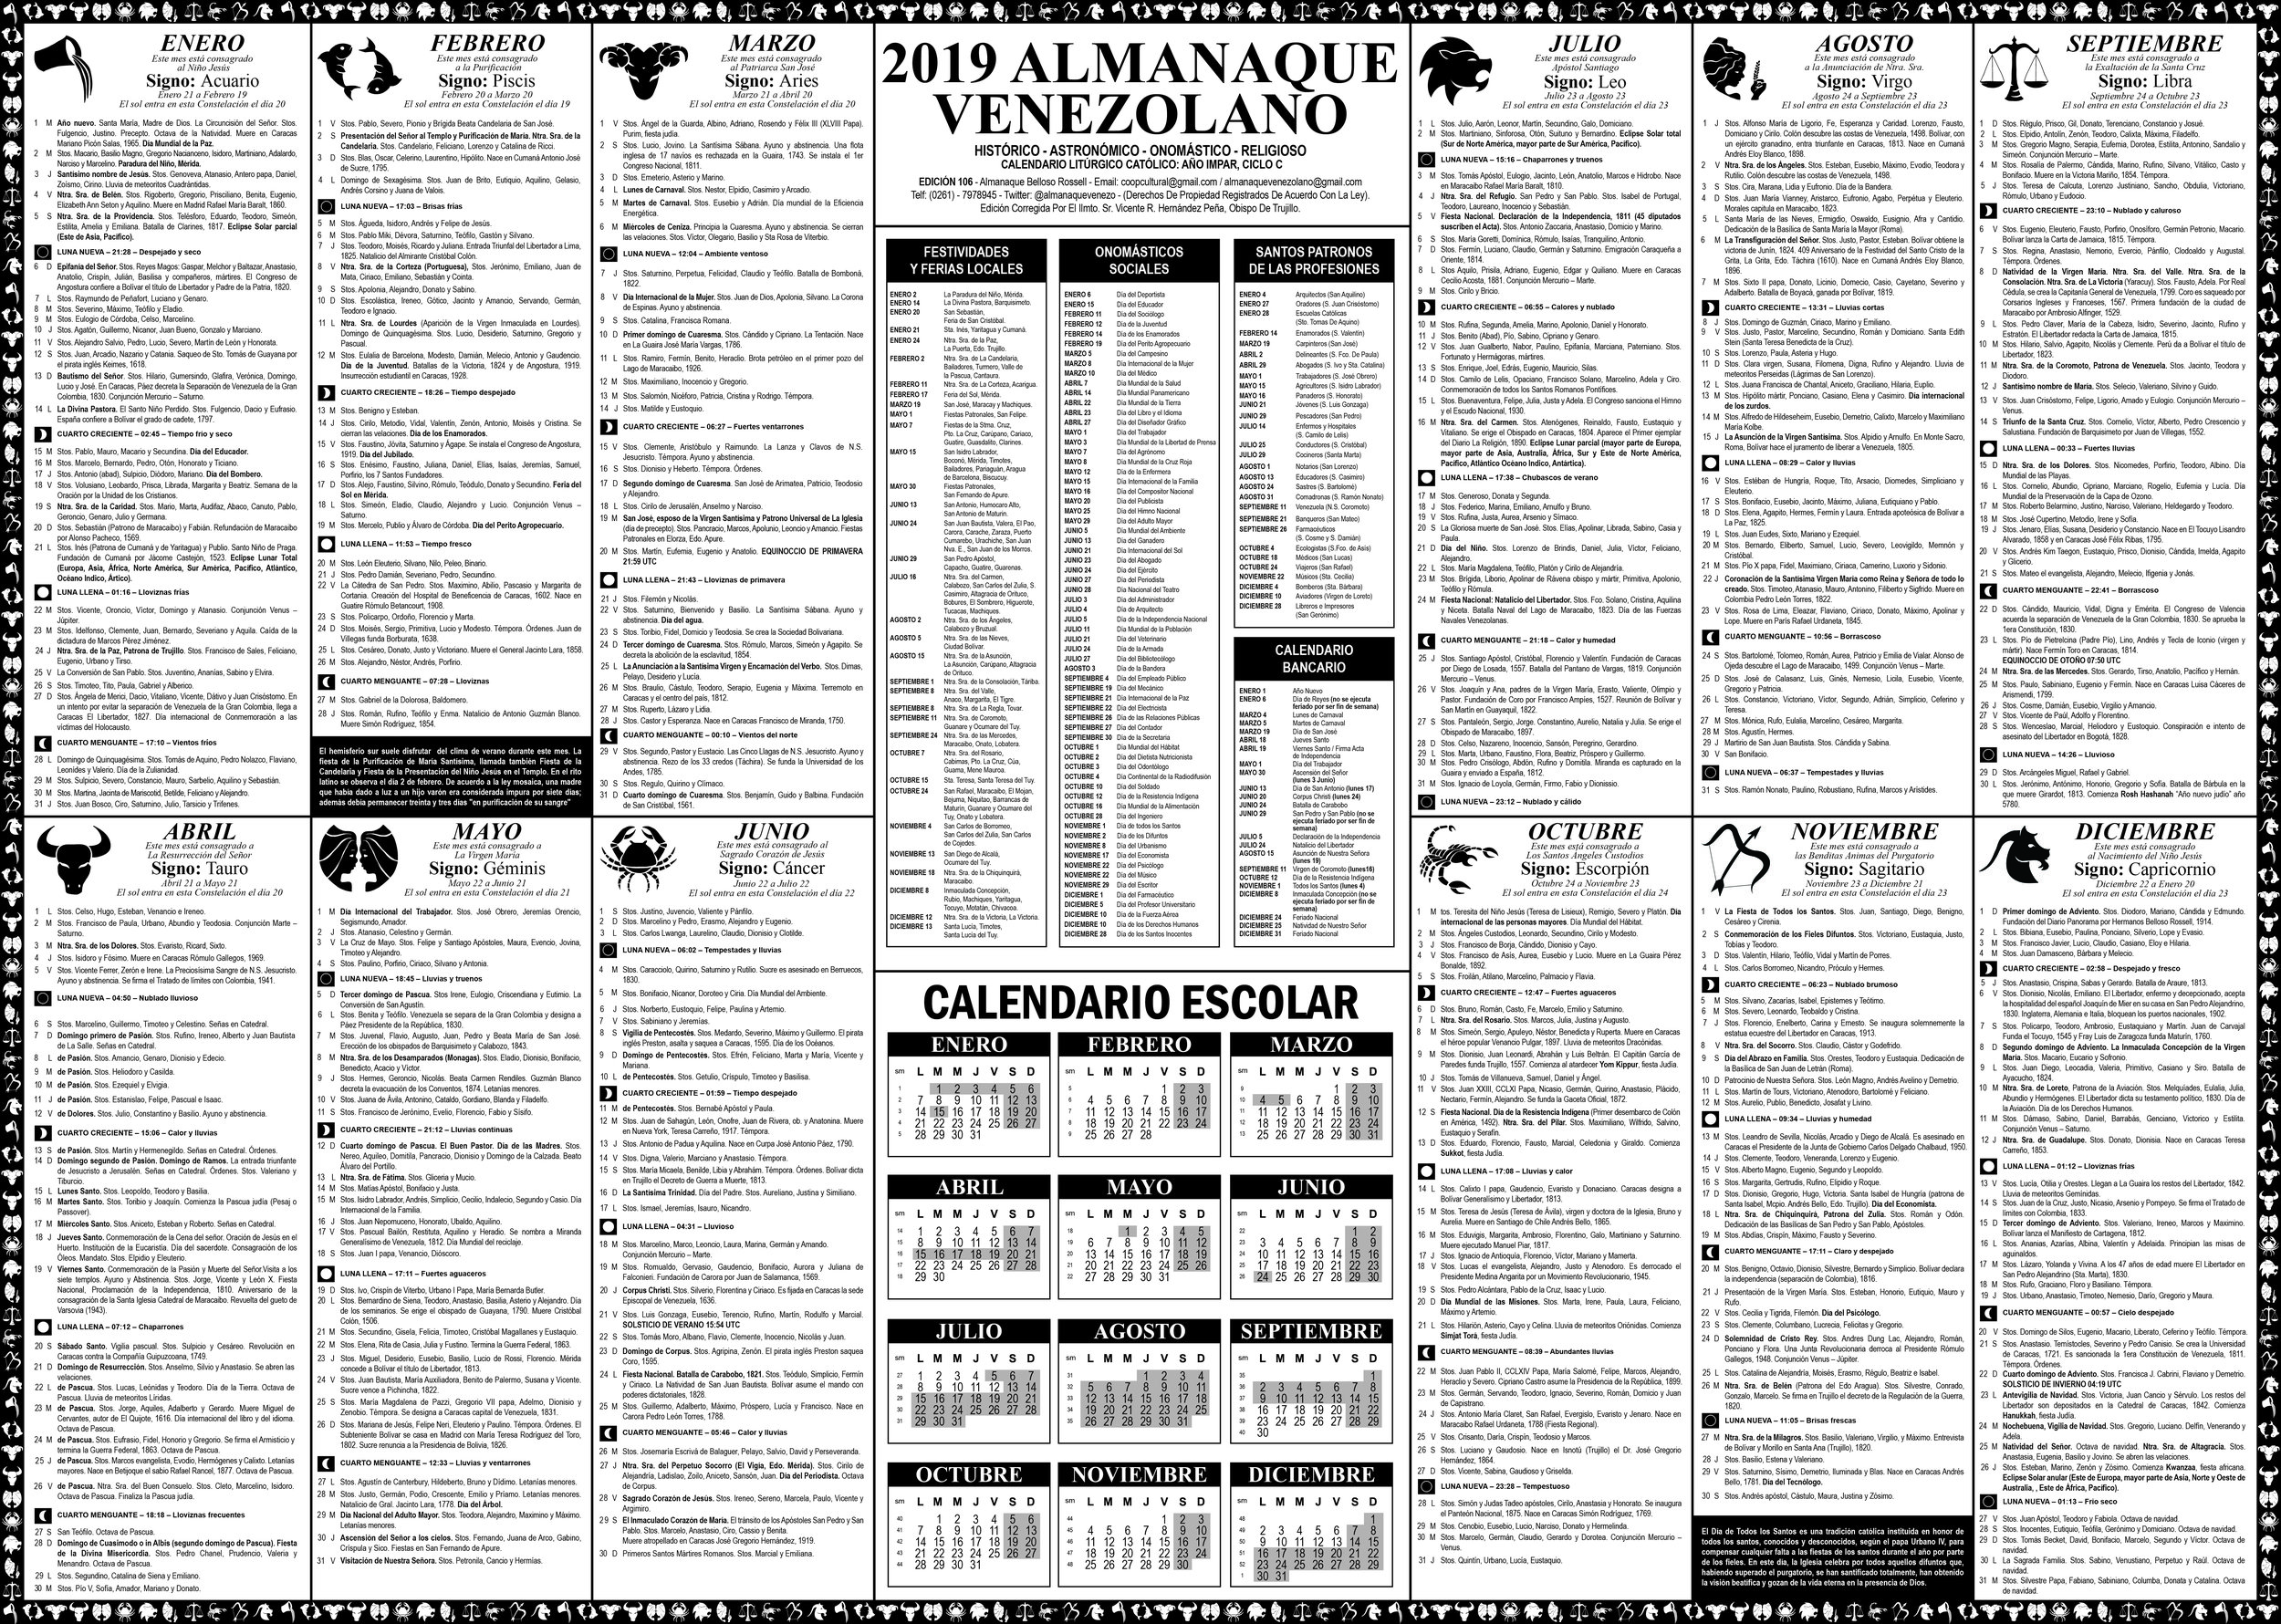 Almanaque Venezolano 2019-01.jpg